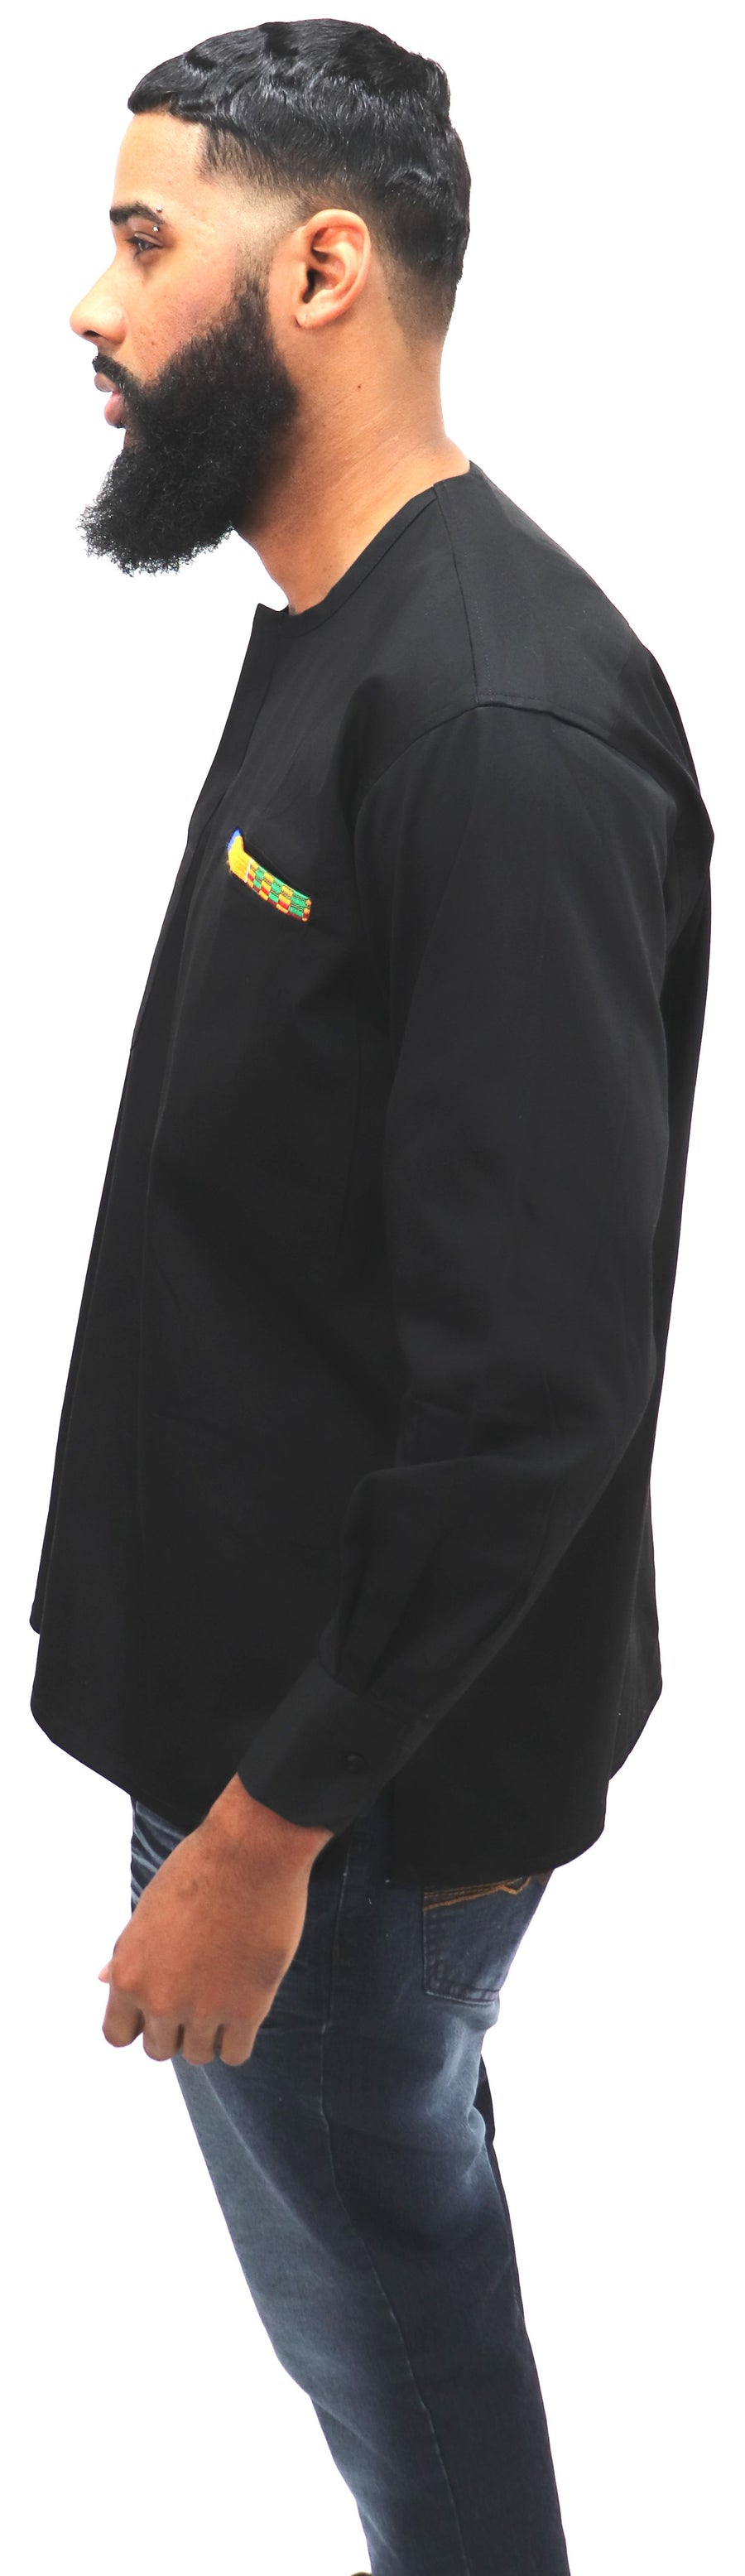 Long Sleeved Polo Style Shirt w/ Woven Kente